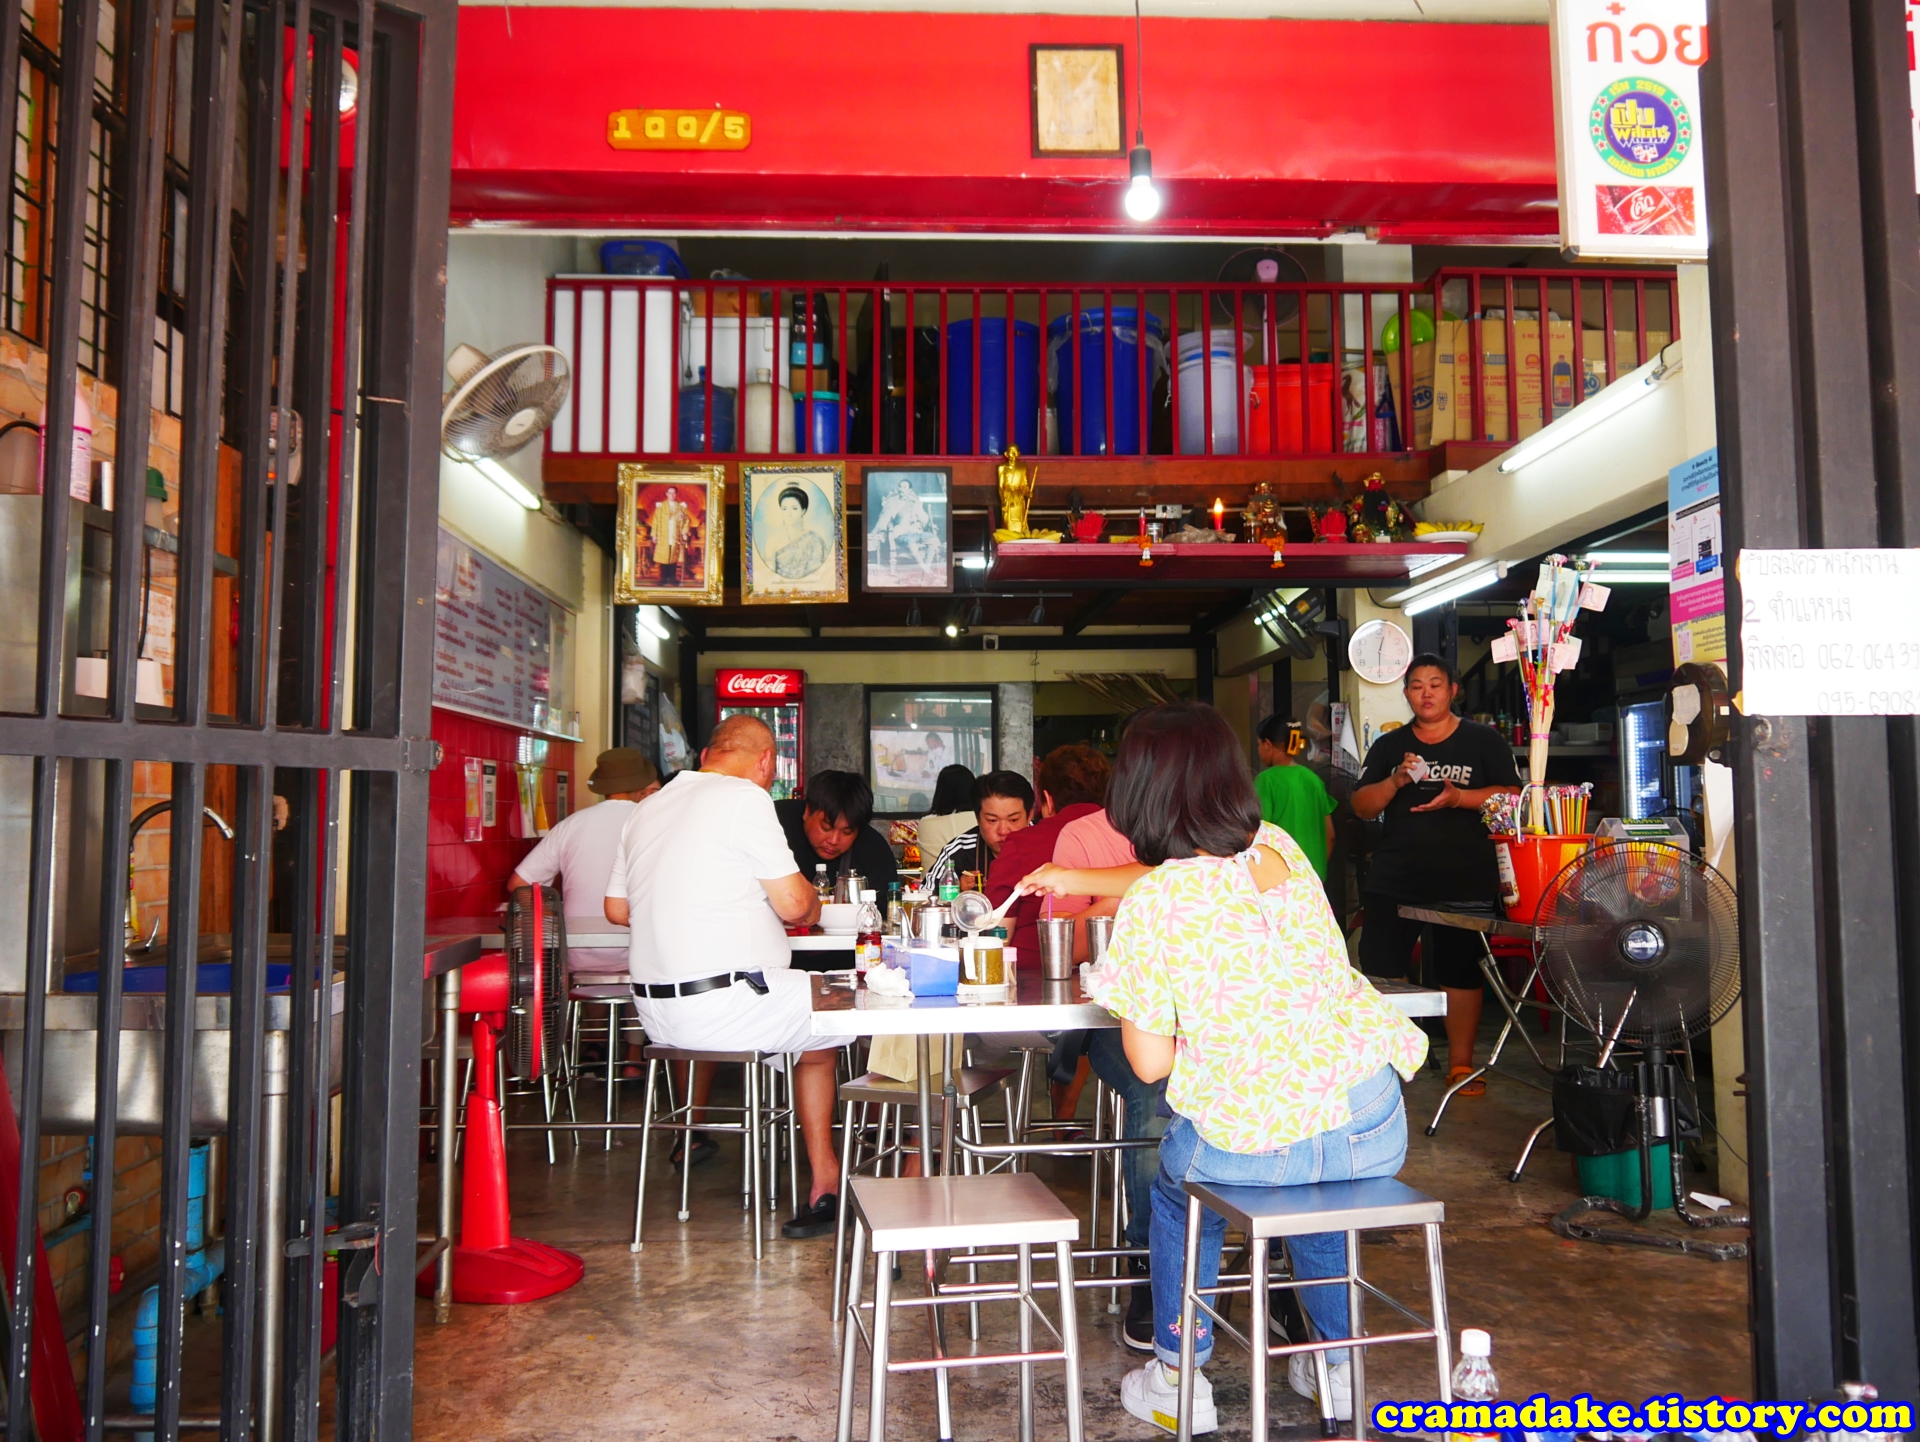 방콕 나이쏘이
방콕 나이소이
방콕 고기국수 맛집
방콕 국수 맛집